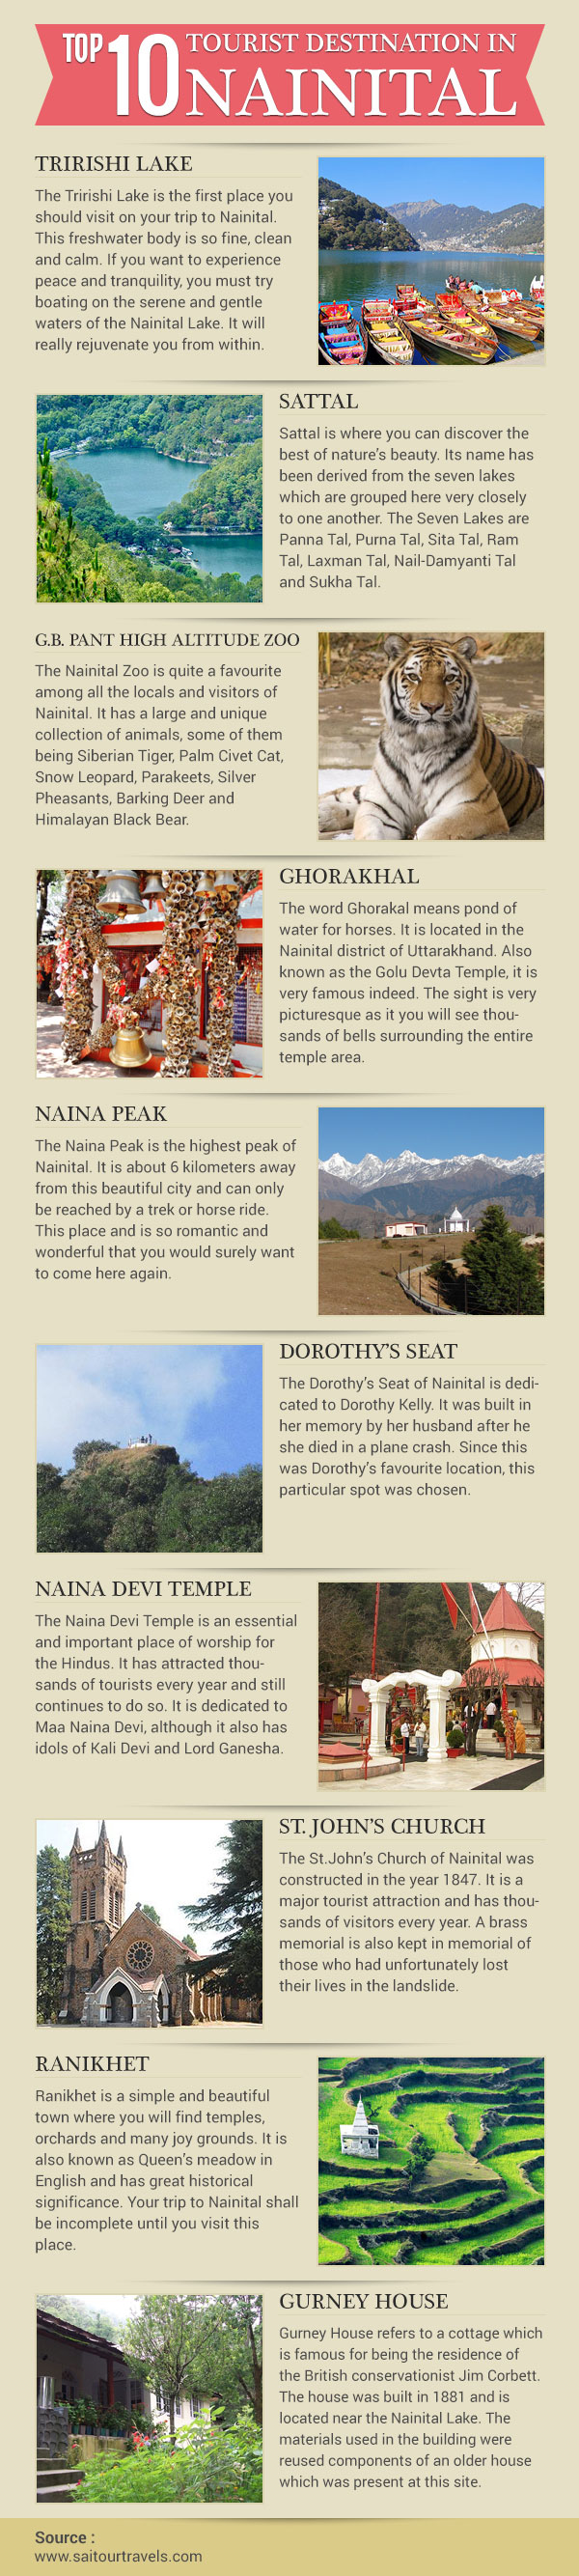 Top 10 tourist destinations in Nainital